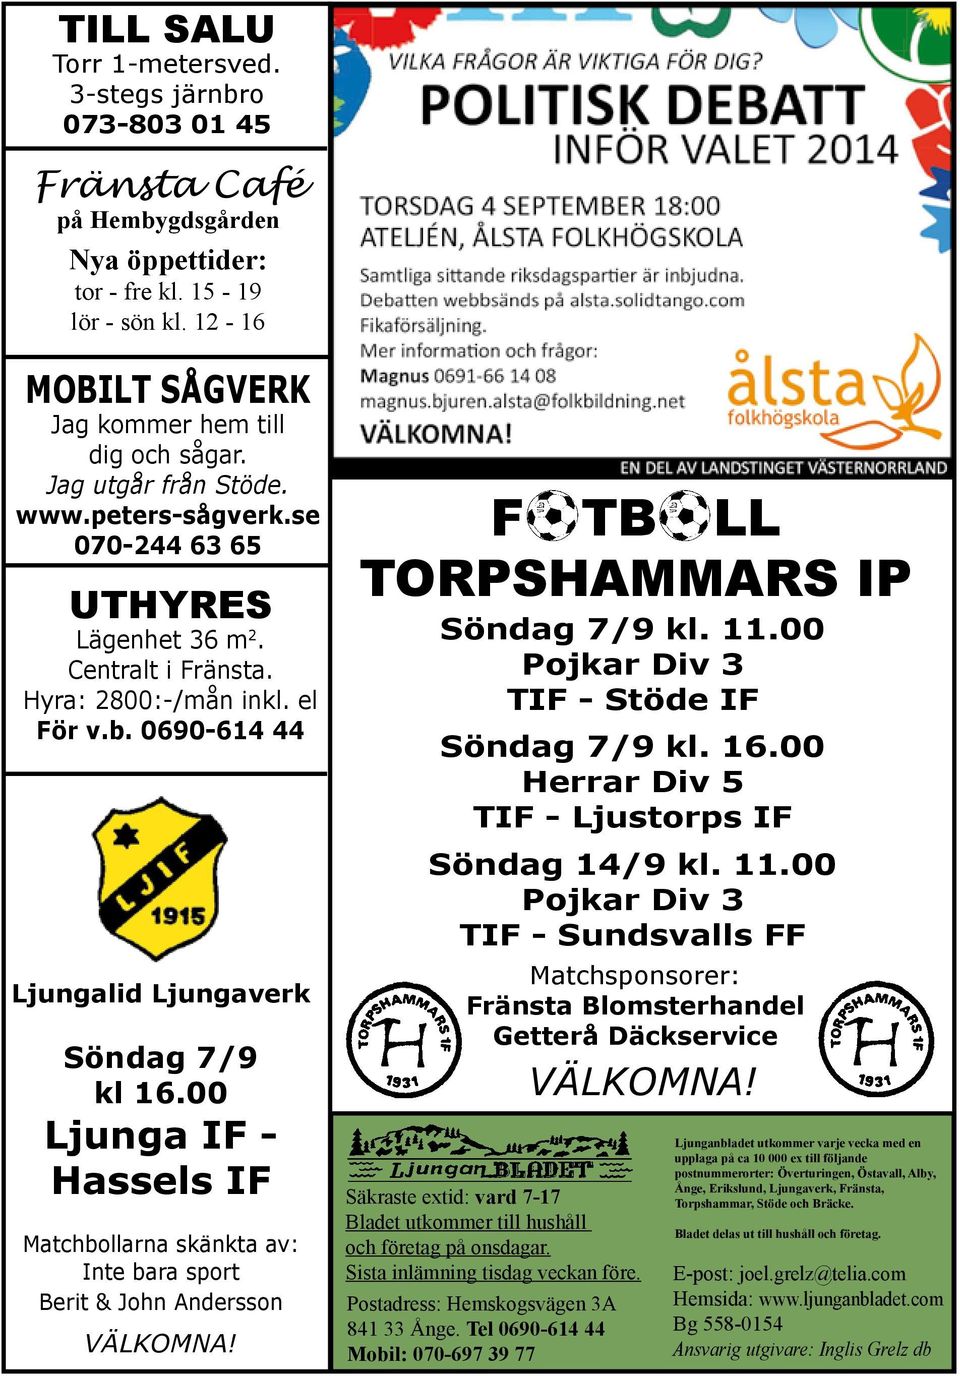 00 Ljunga IF - Hassels IF Matchbollarna skänkta av: Inte bara sport Berit & John Andersson VÄLKOMNA! F TB LL TORPSHAMMARS IP Söndag 7/9 kl. 11.00 Pojkar Div 3 TIF - Stöde IF Söndag 7/9 kl. 16.